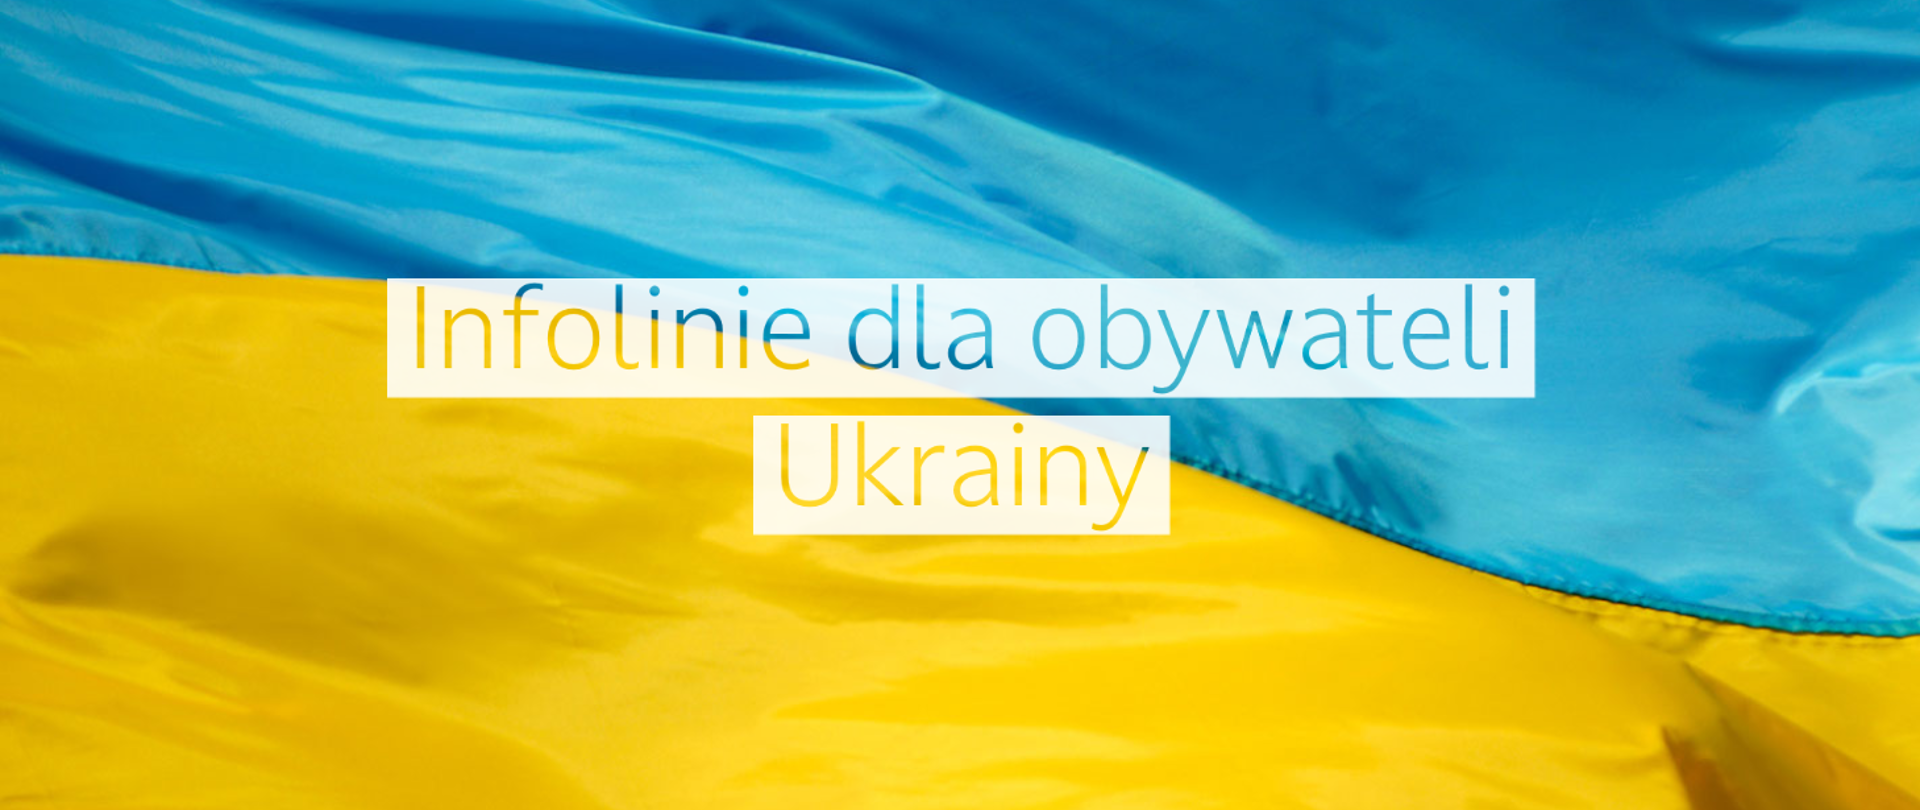 Infolinie dla obywateli Ukrainy